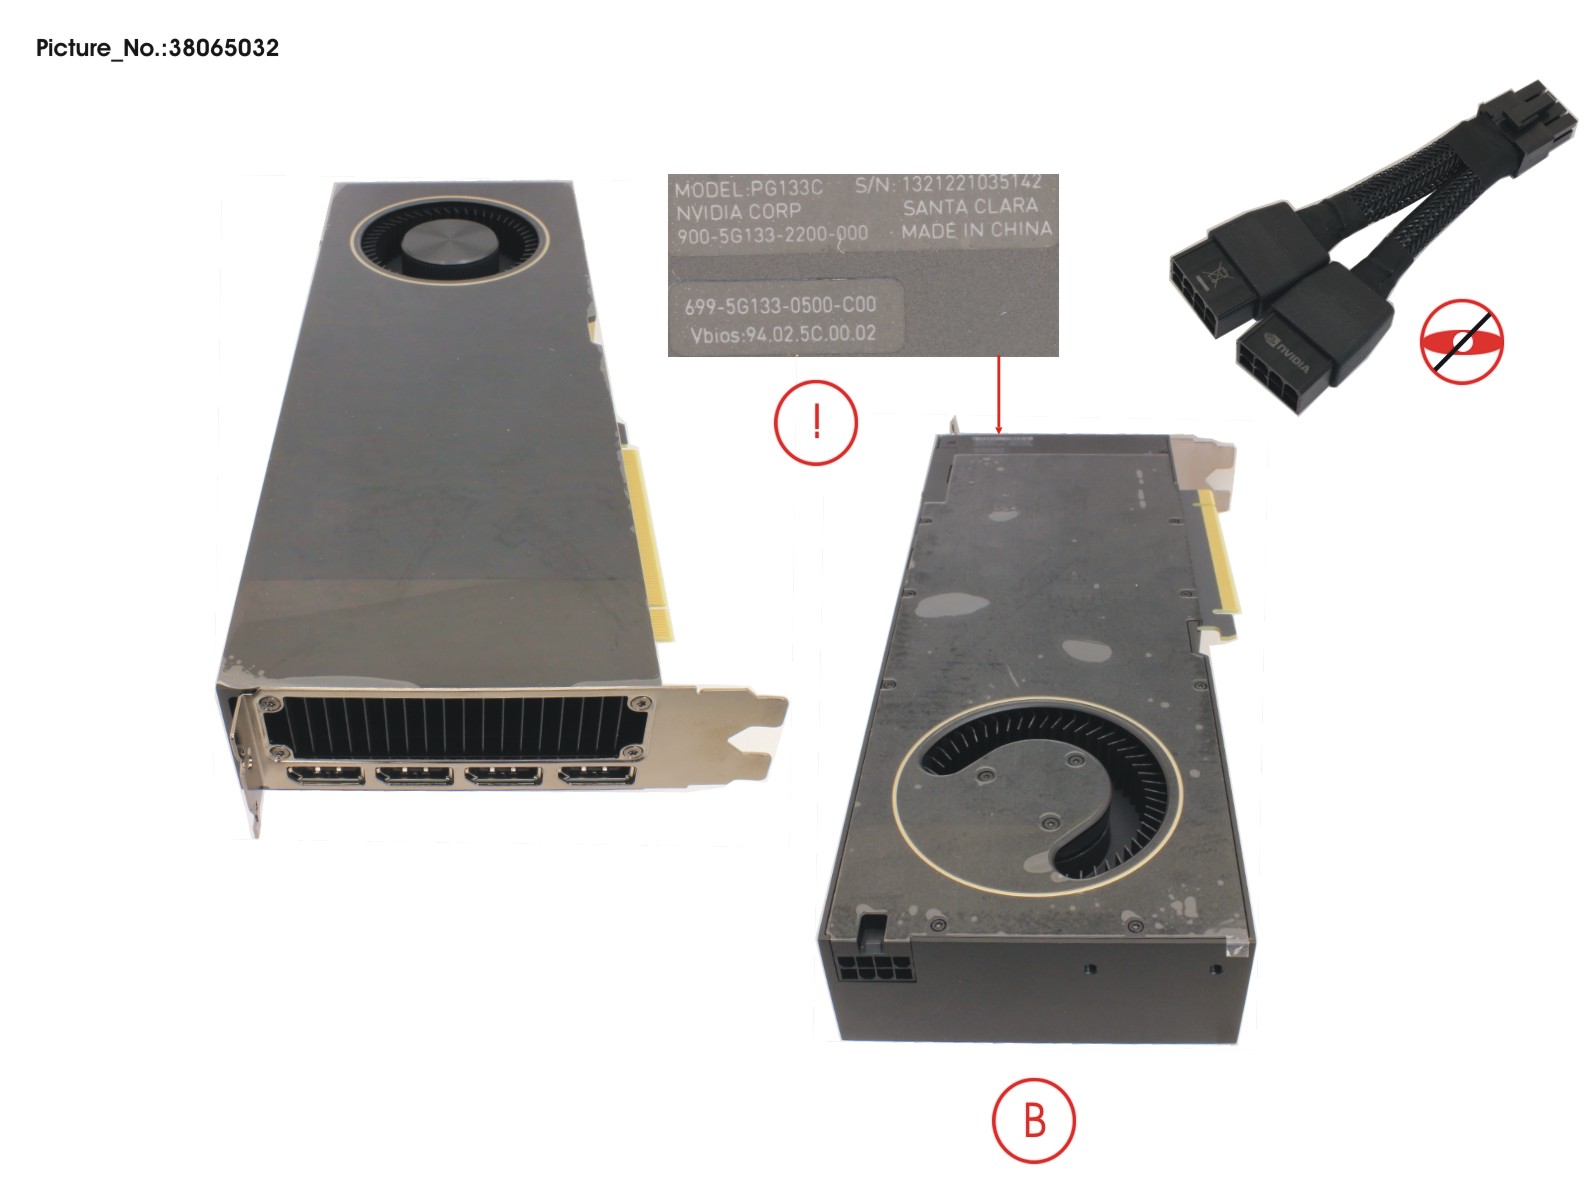 NVIDIA RTX-A6000 PCI